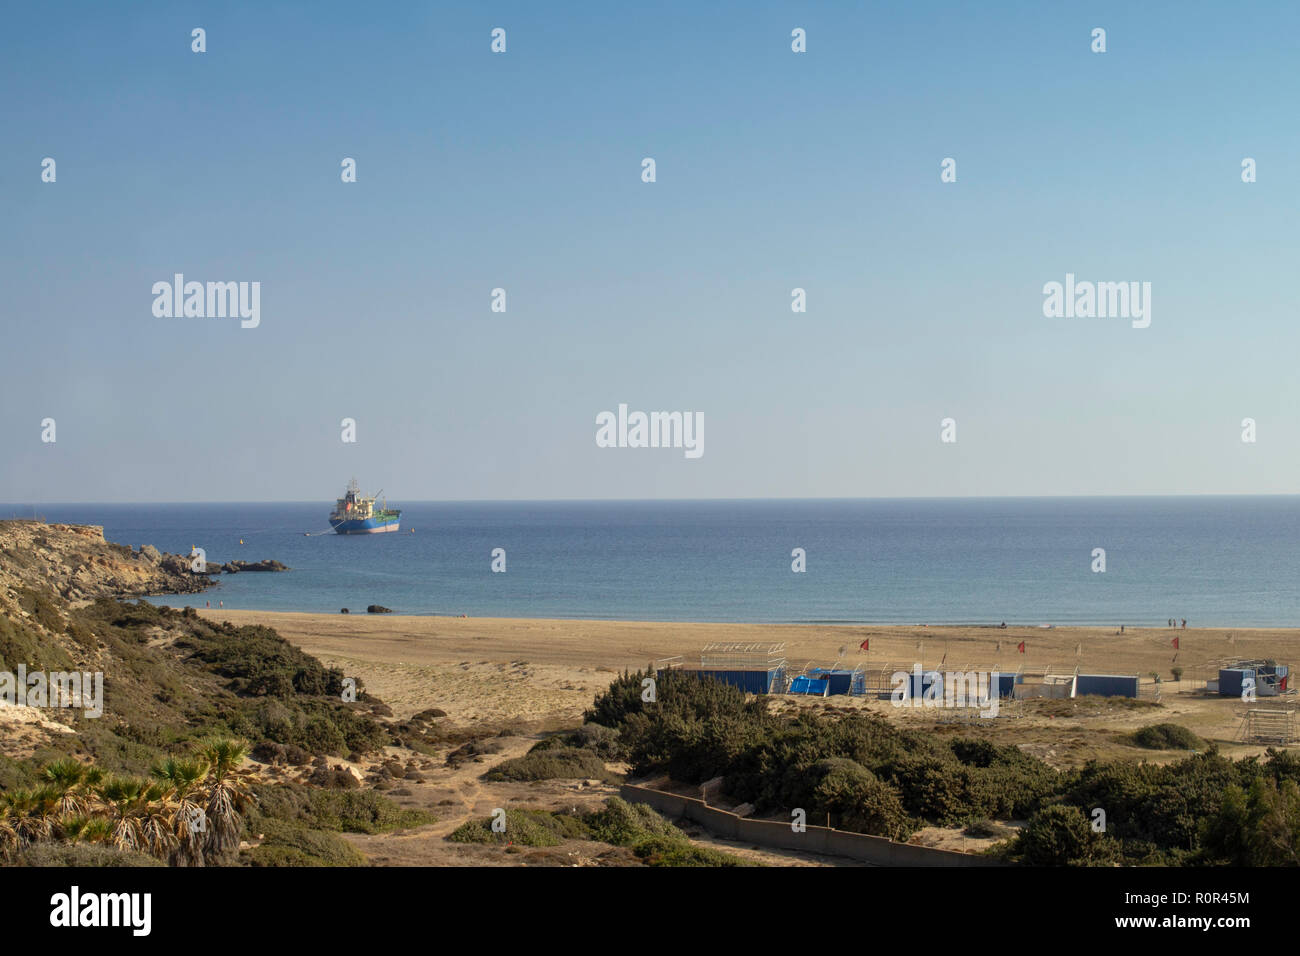 Un aperçu de la plage à Prasonisi Rhodes,où la mer Méditerranée et la mer Egée. La plage est vaste et populaire auprès des véliplanchistes. Banque D'Images